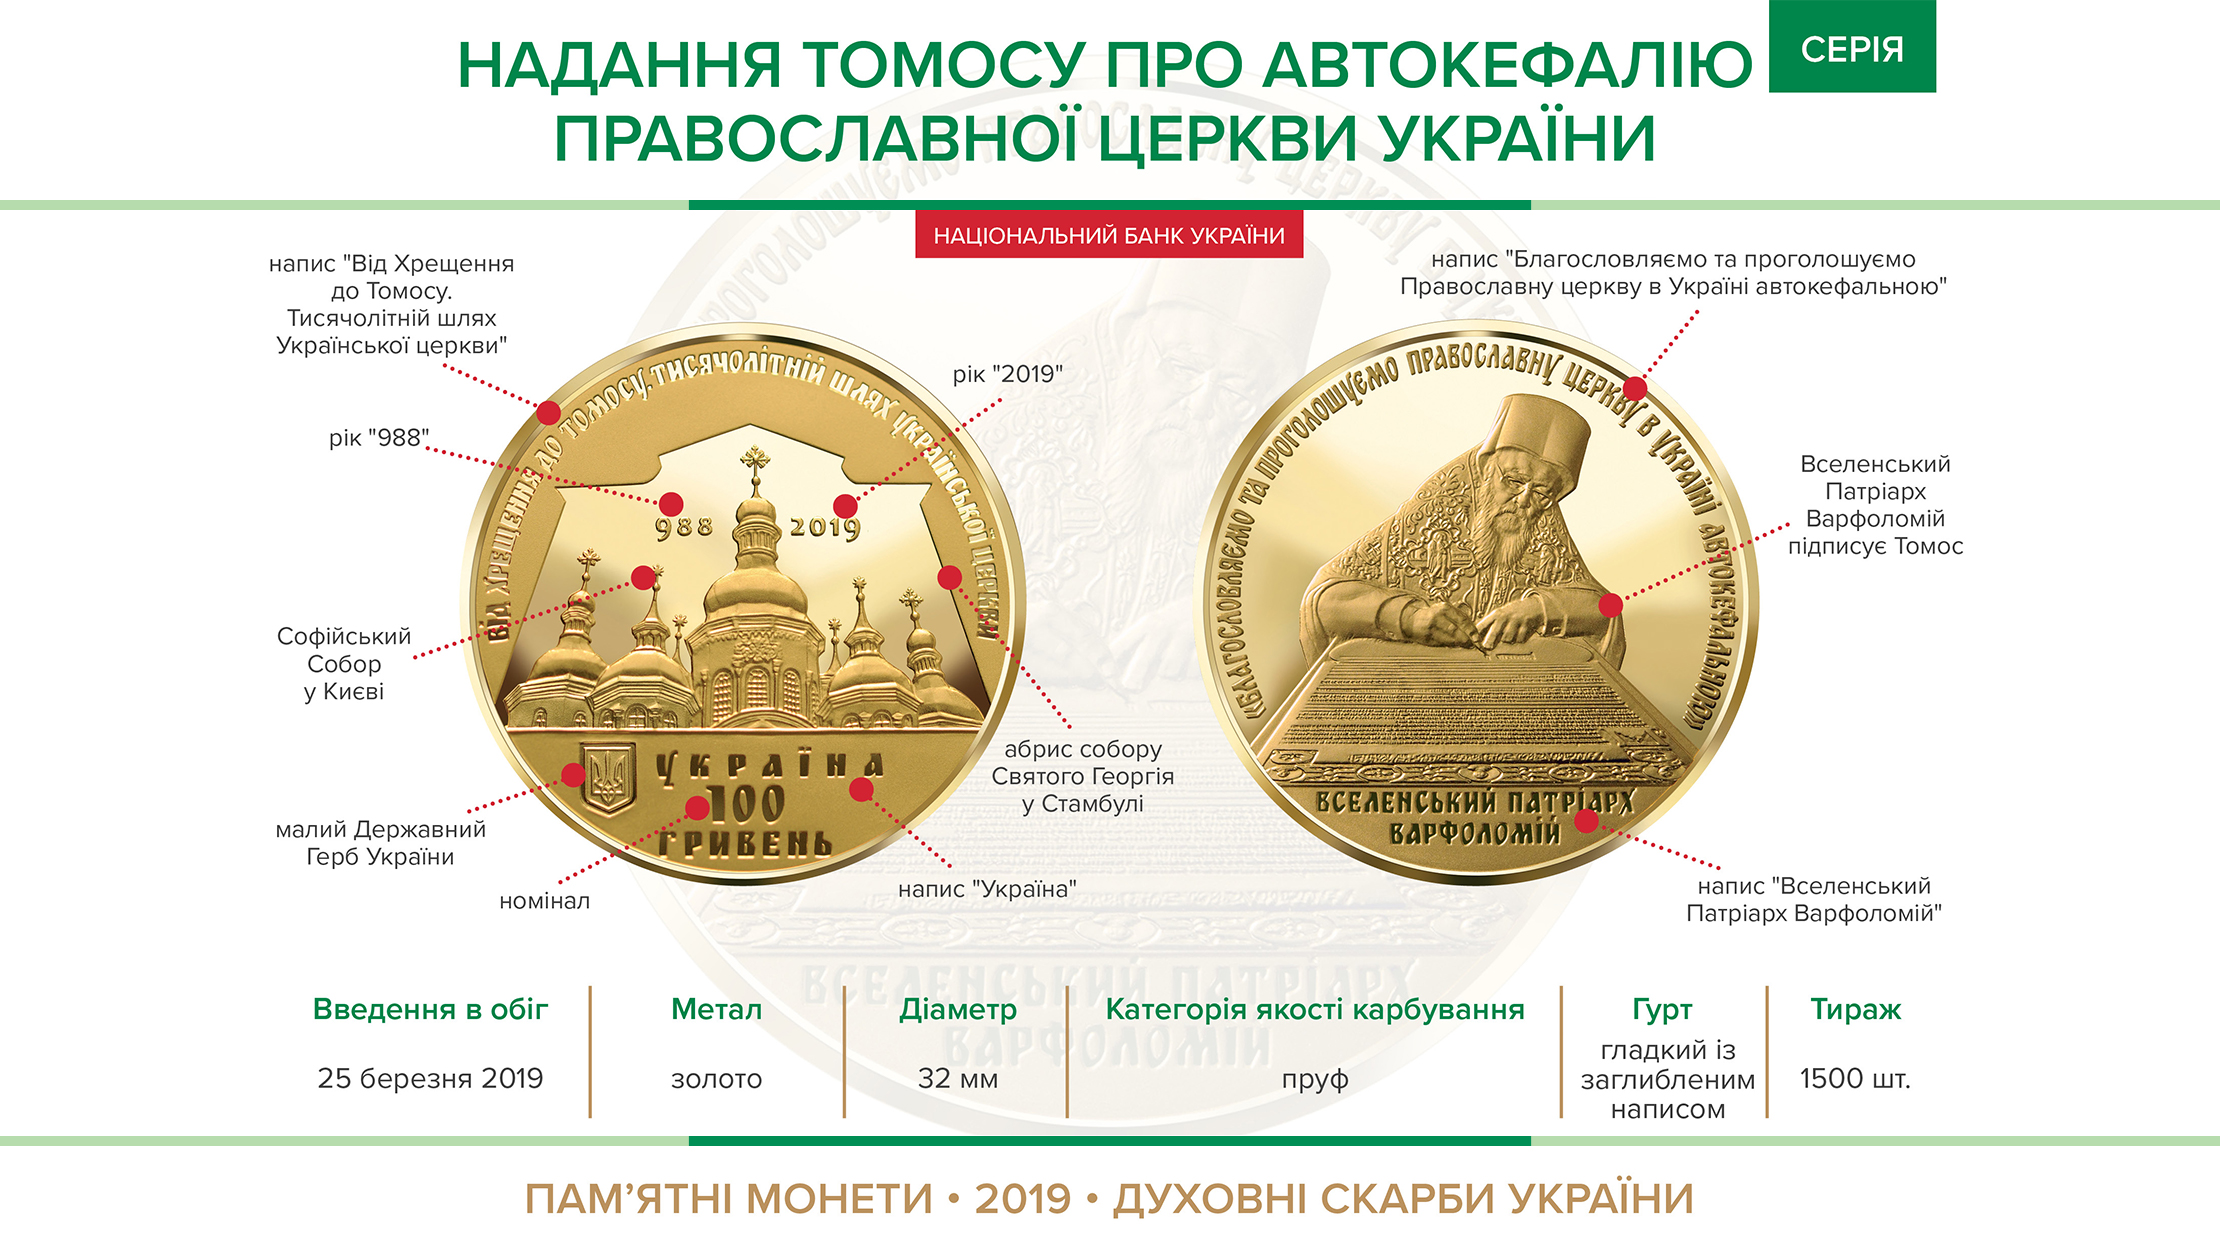 Пам'ятна монета "Надання Томосу про автокефалію Православної церкви України" (золото) вводиться в обіг з 25 березня 2019 року